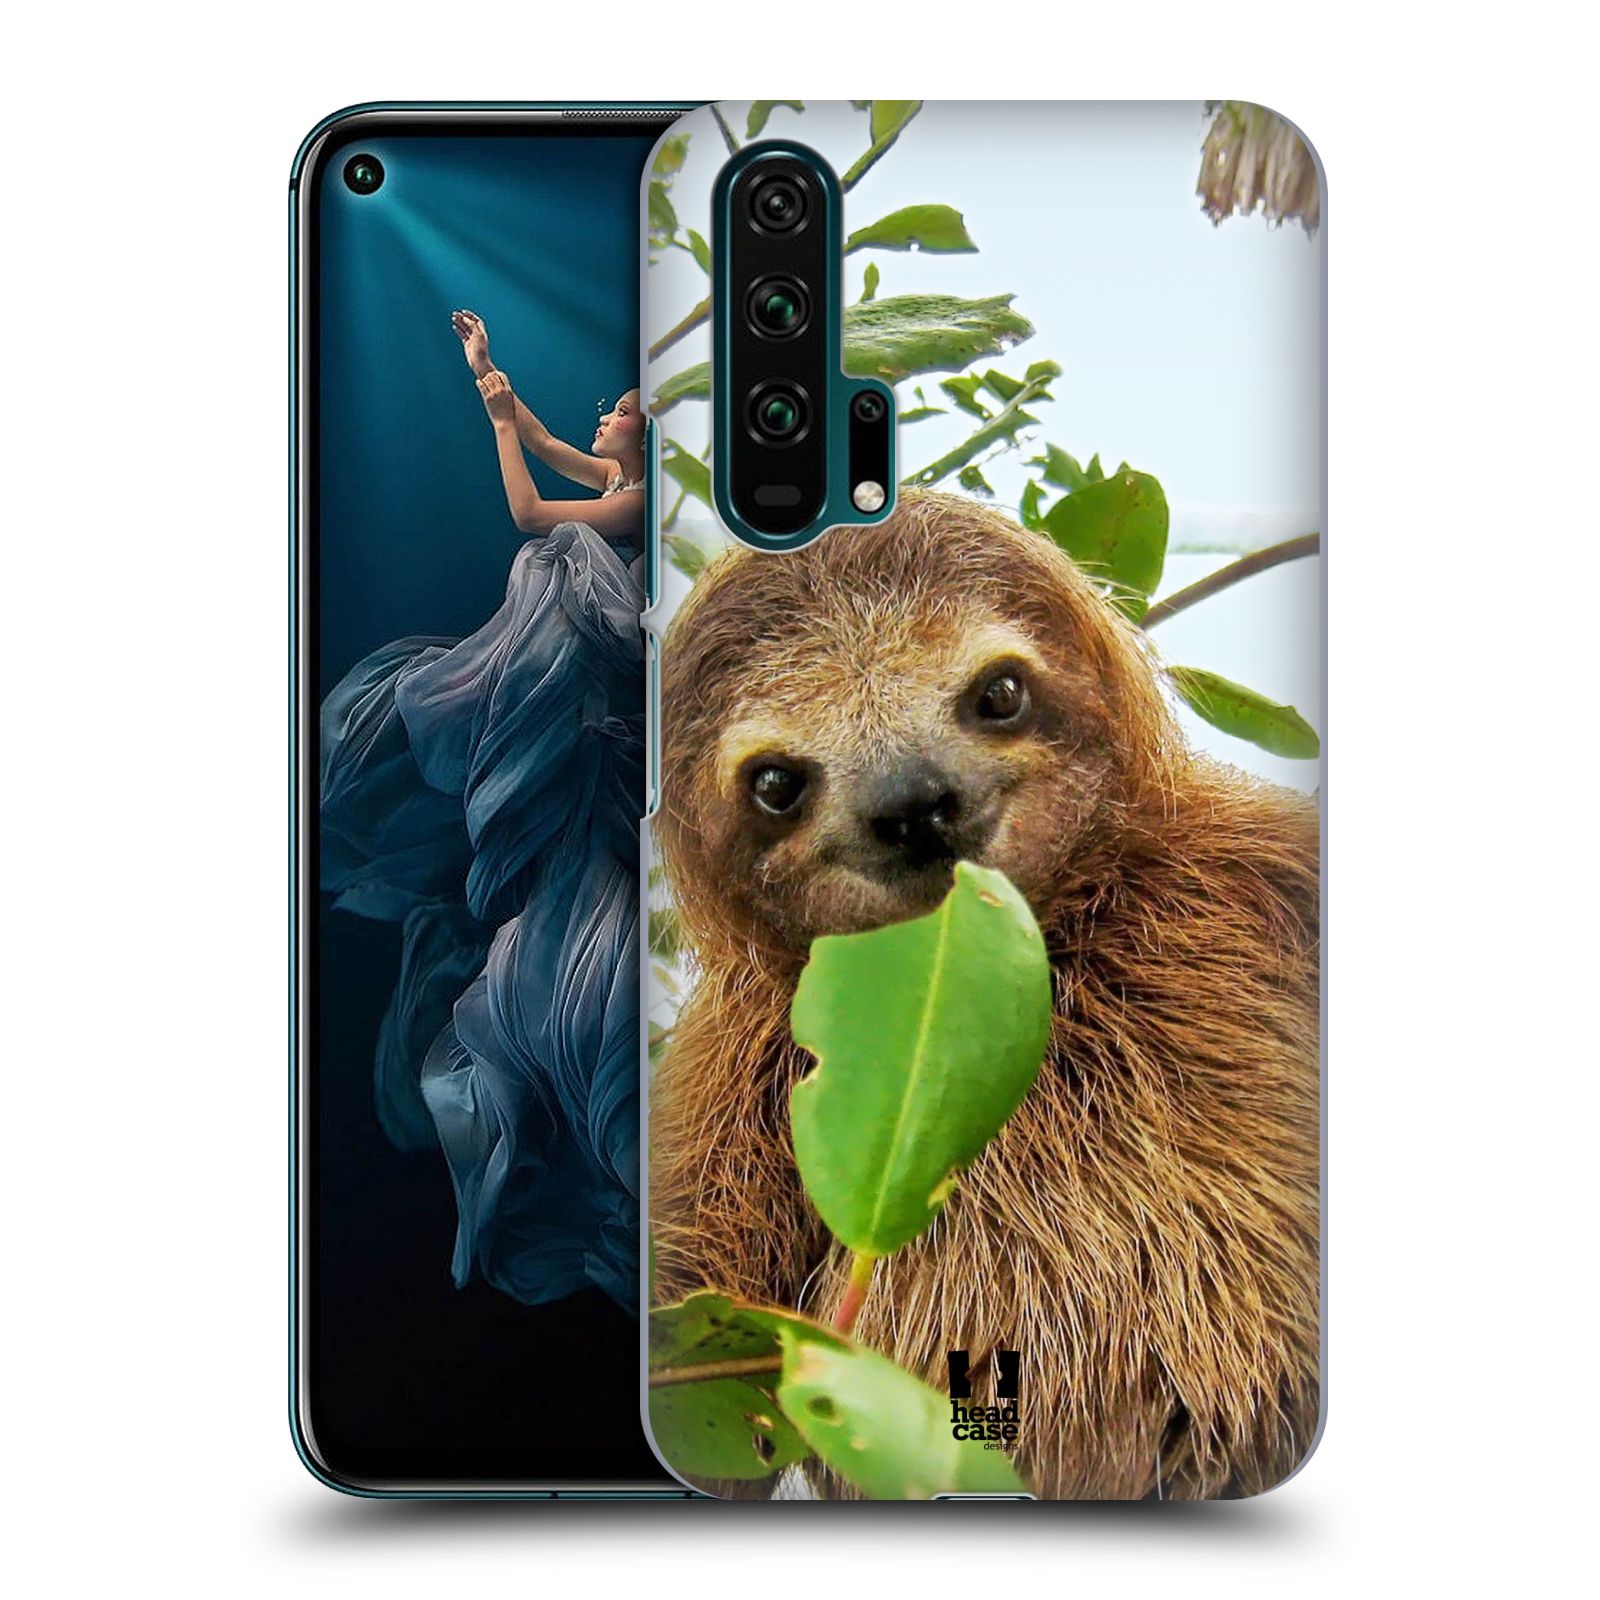 Pouzdro na mobil Honor 20 PRO - HEAD CASE - vzor slavná zvířata foto lenochod